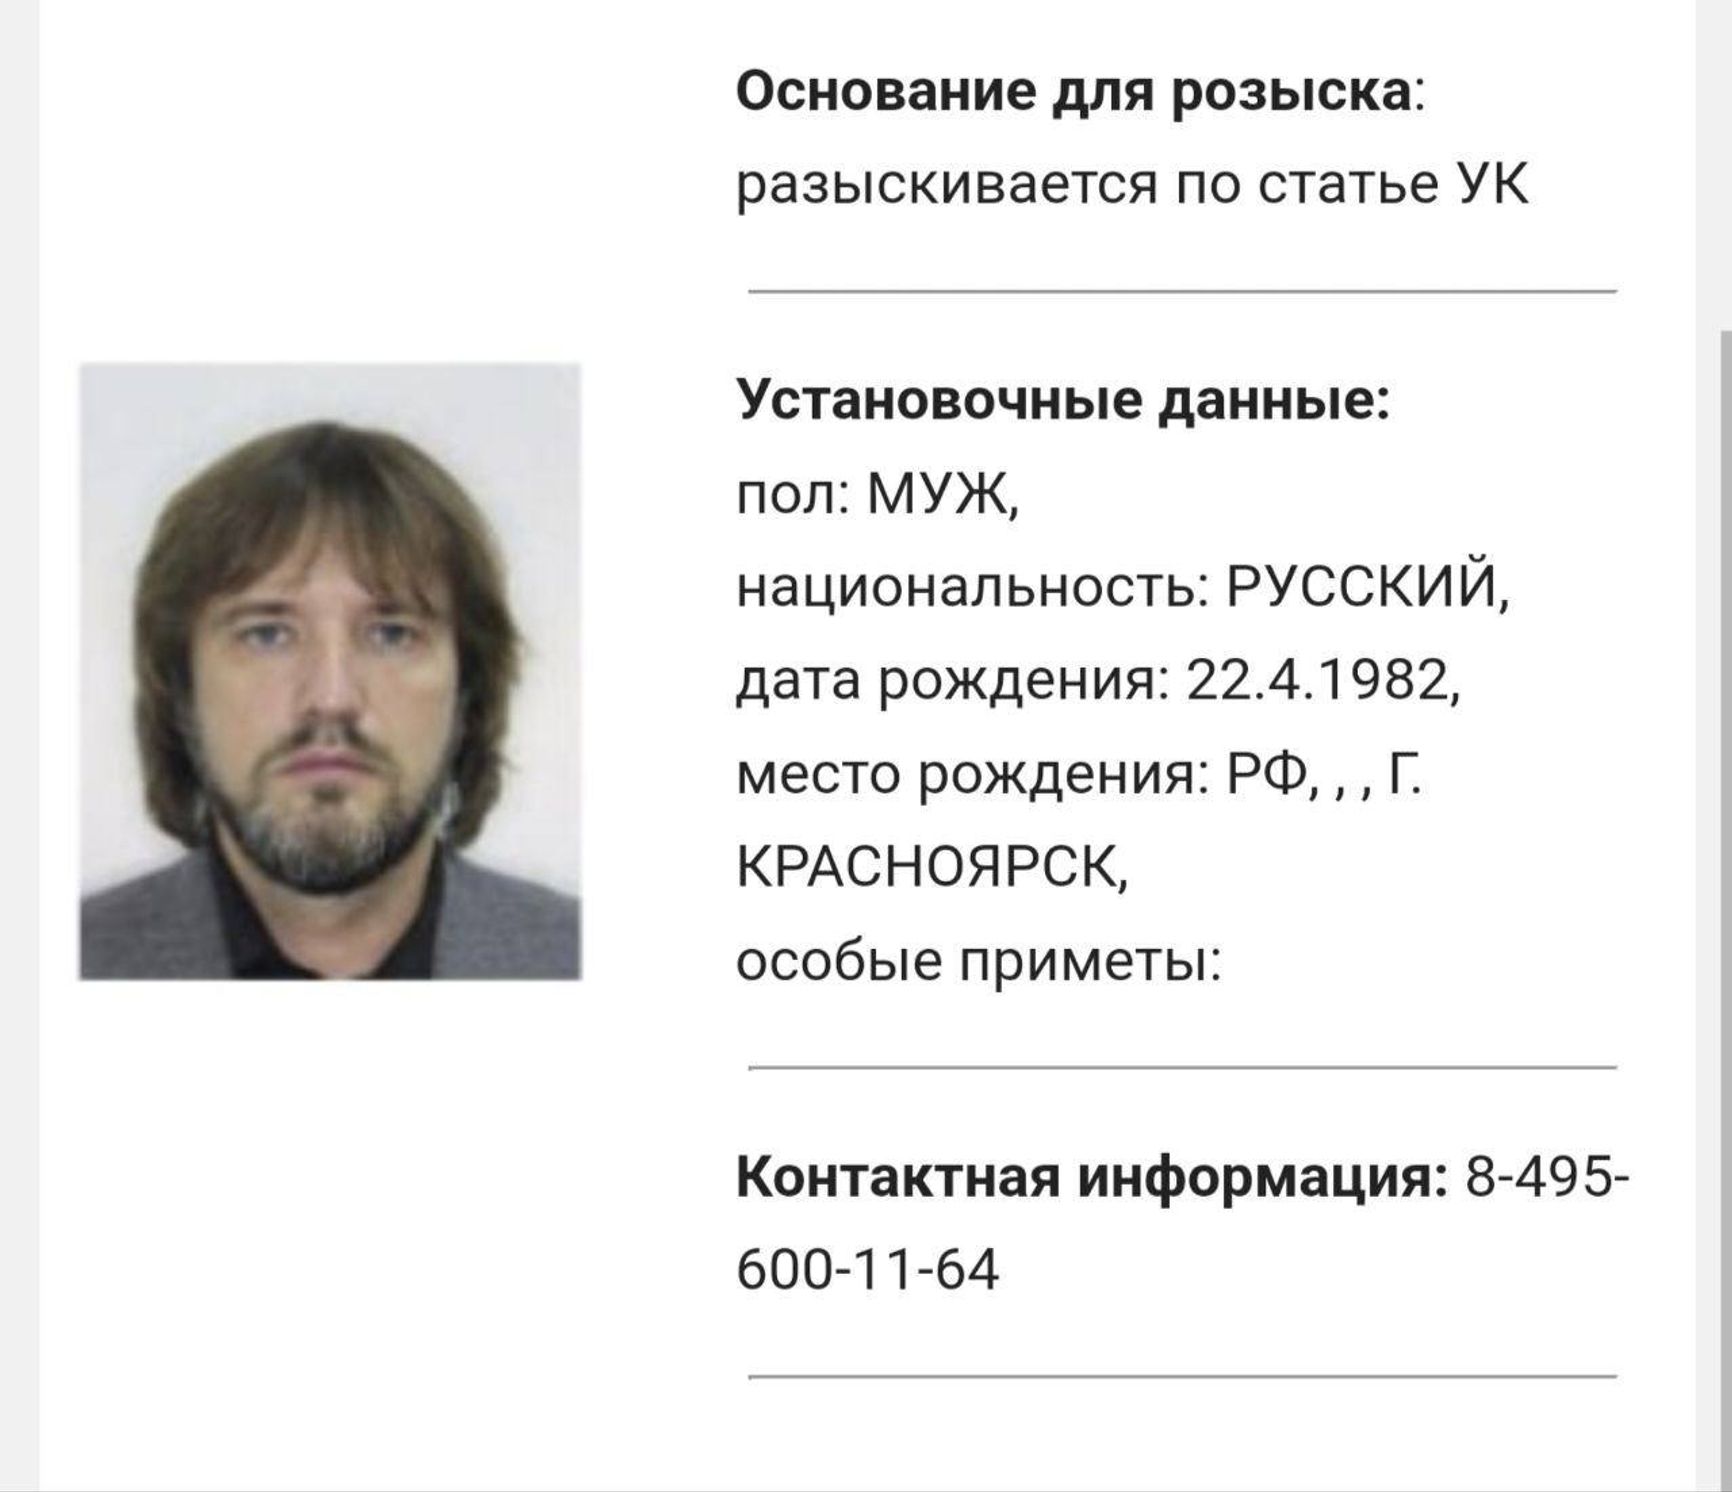 Сын губернатора Красноярского края объявлен в федеральный розыск по делу об отмывании денег